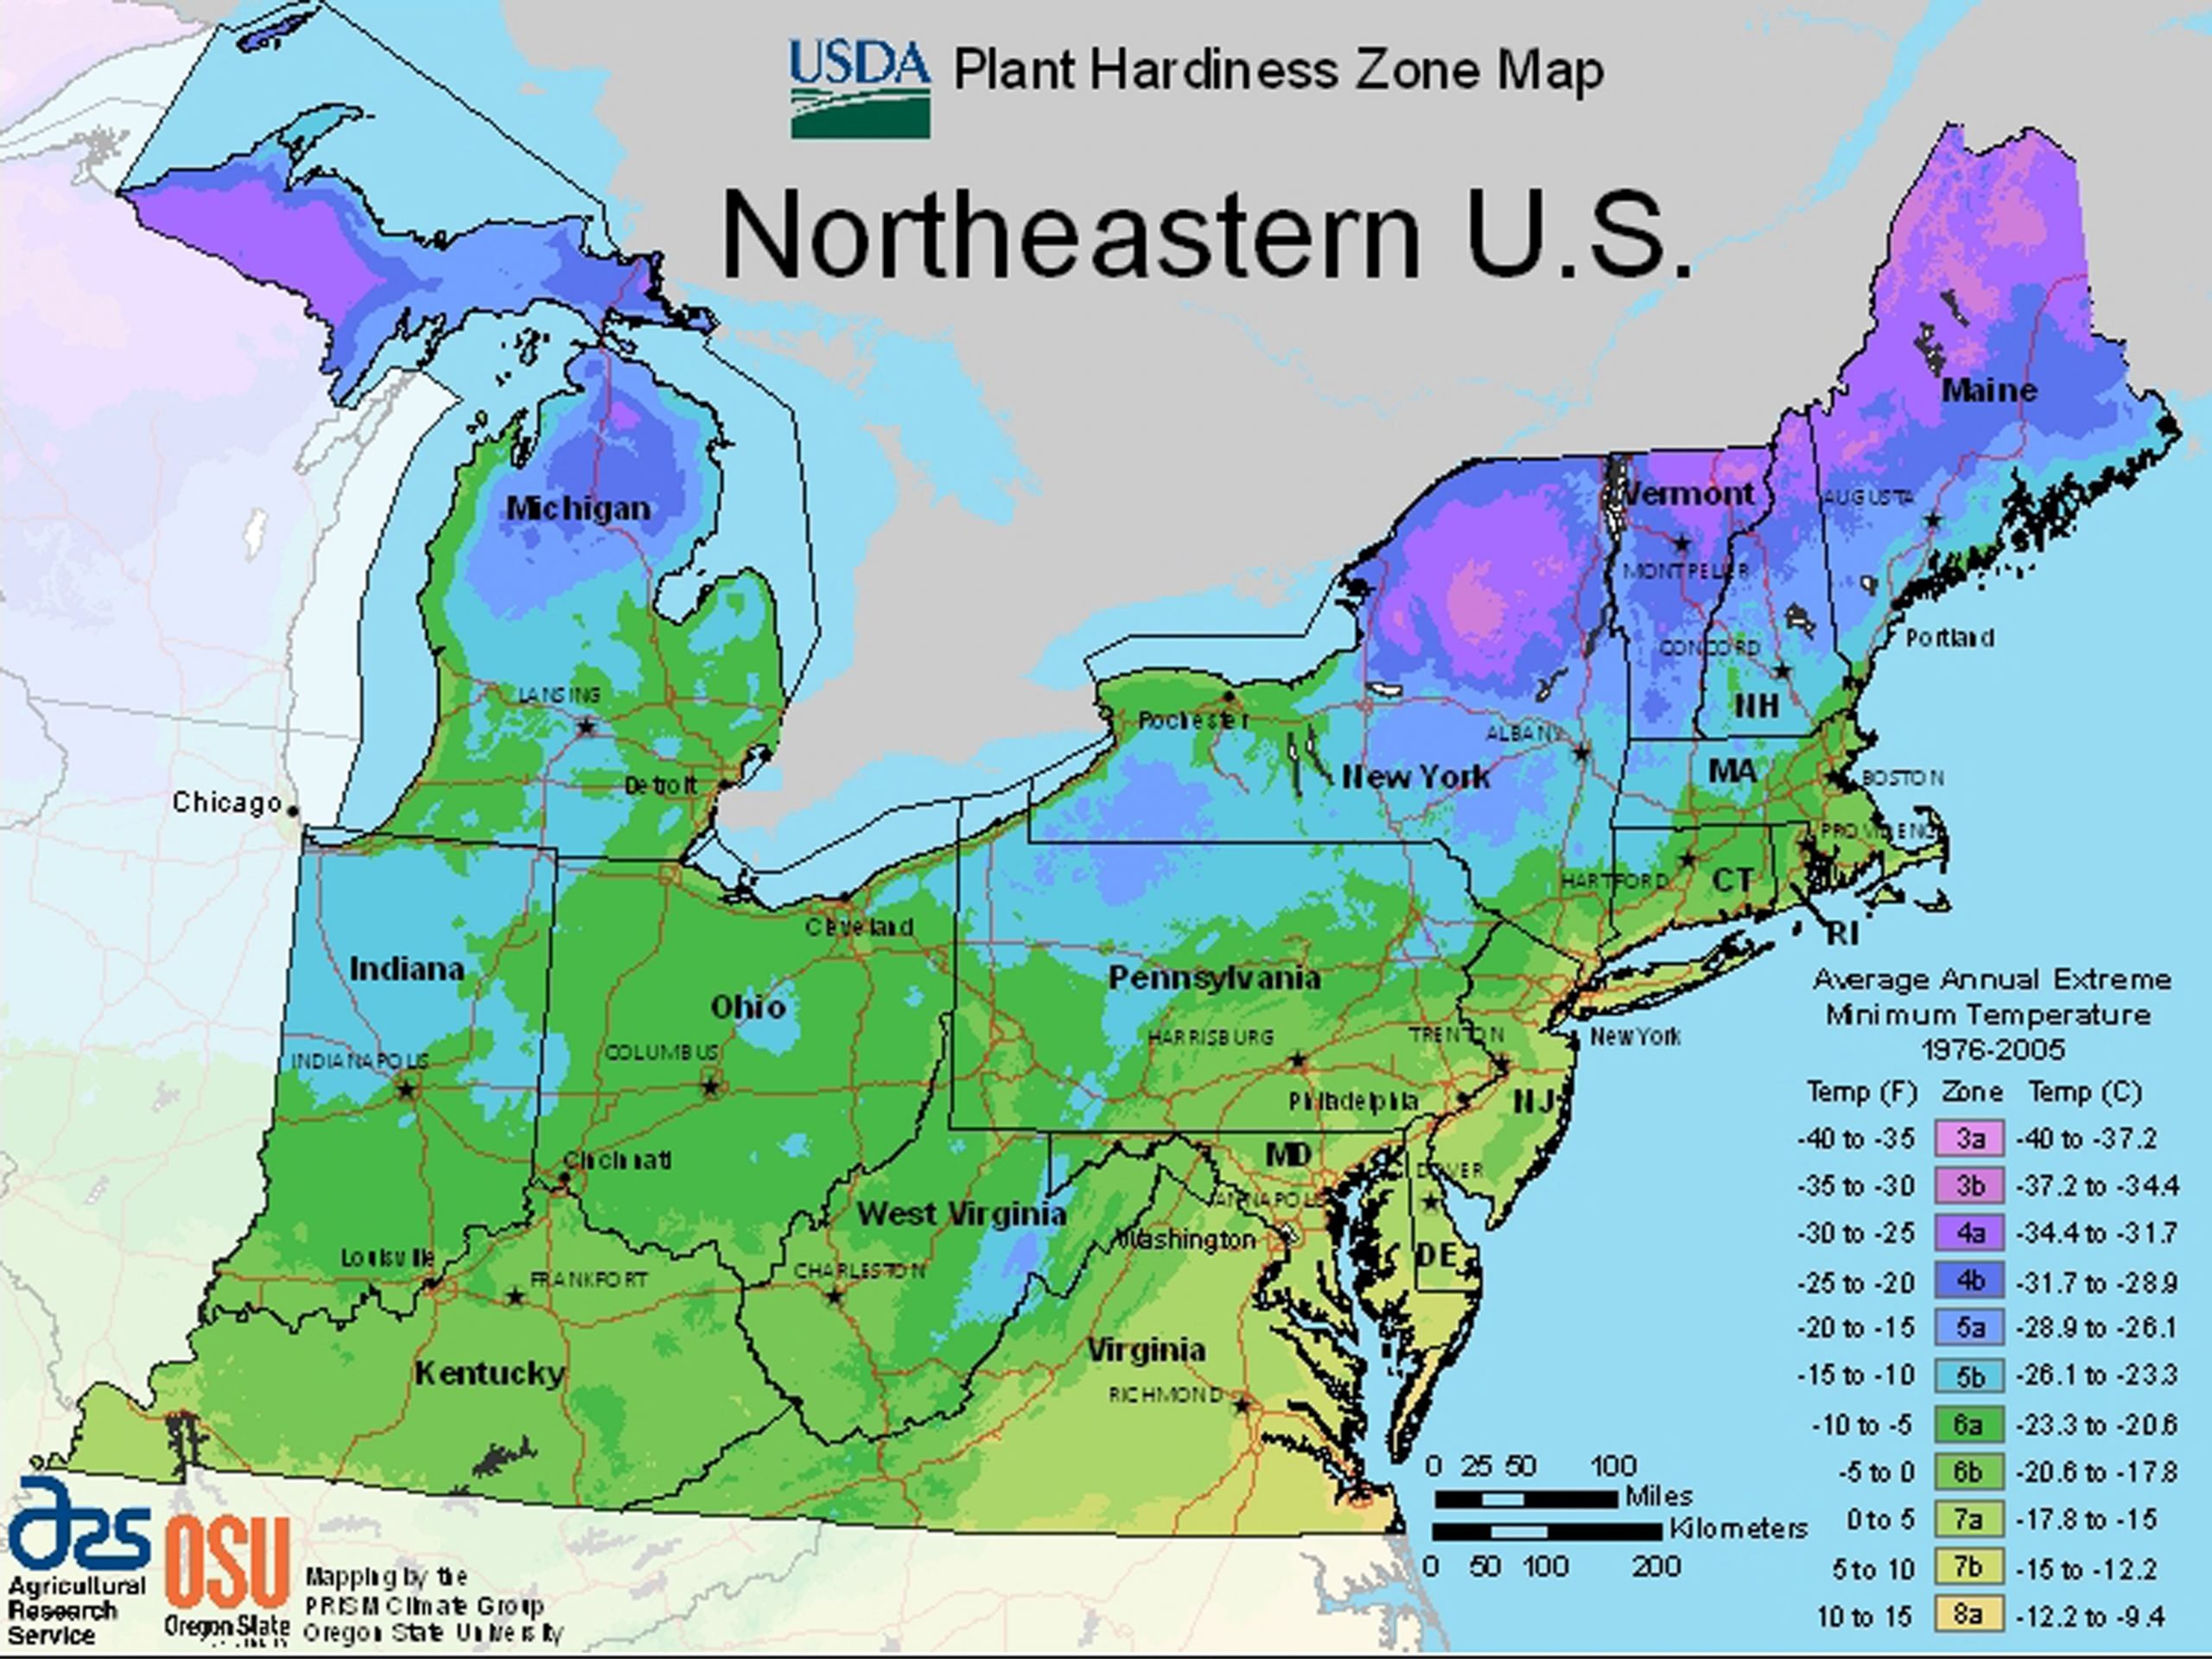 USDA Plant Hardiness Zone Maps by Region